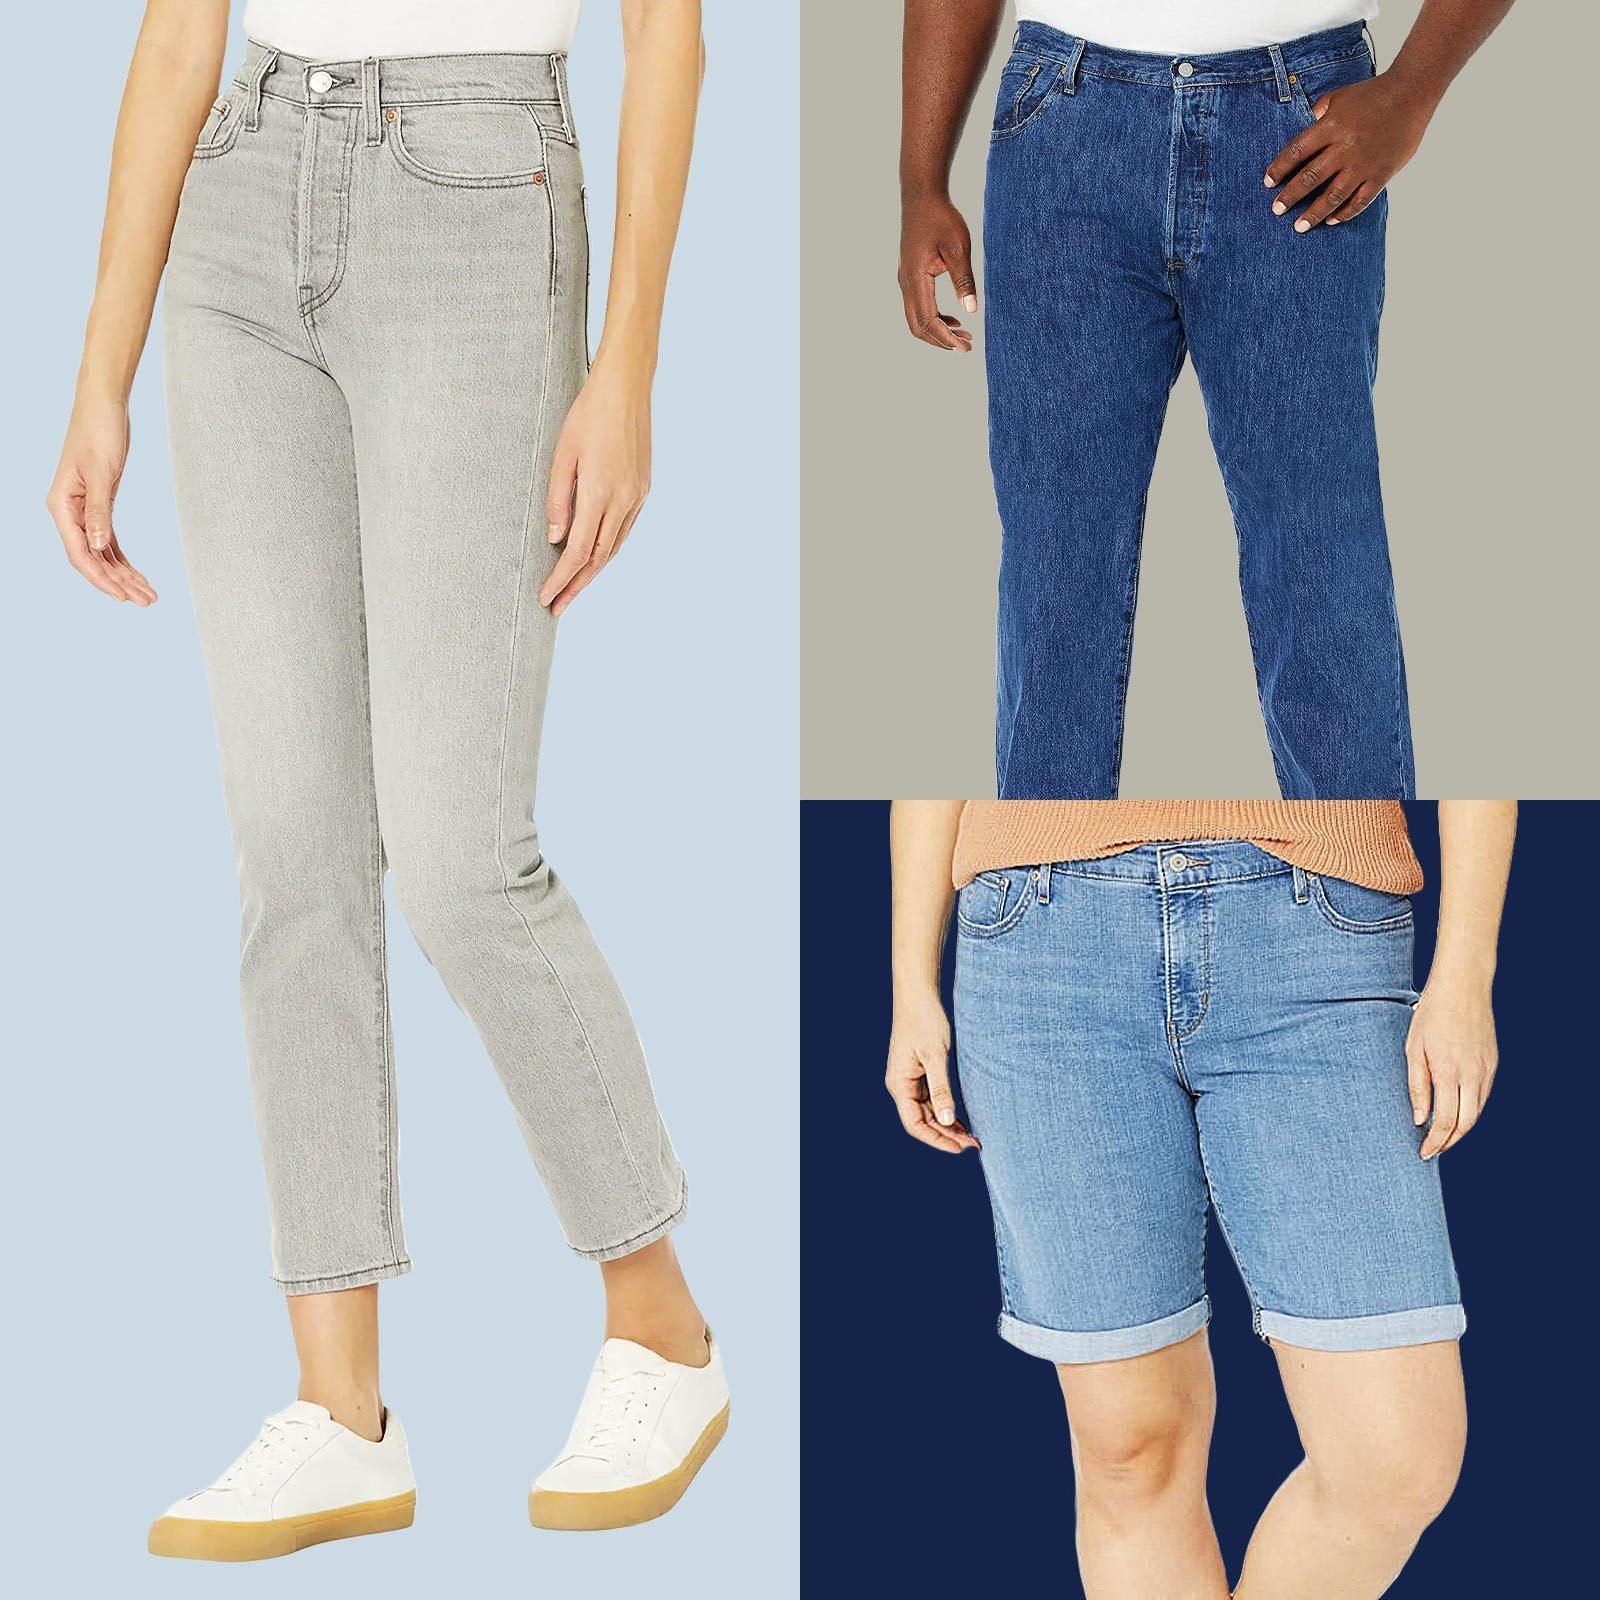 Levi's® 501® Original Jean - Women's Jeans in Trusty Plan